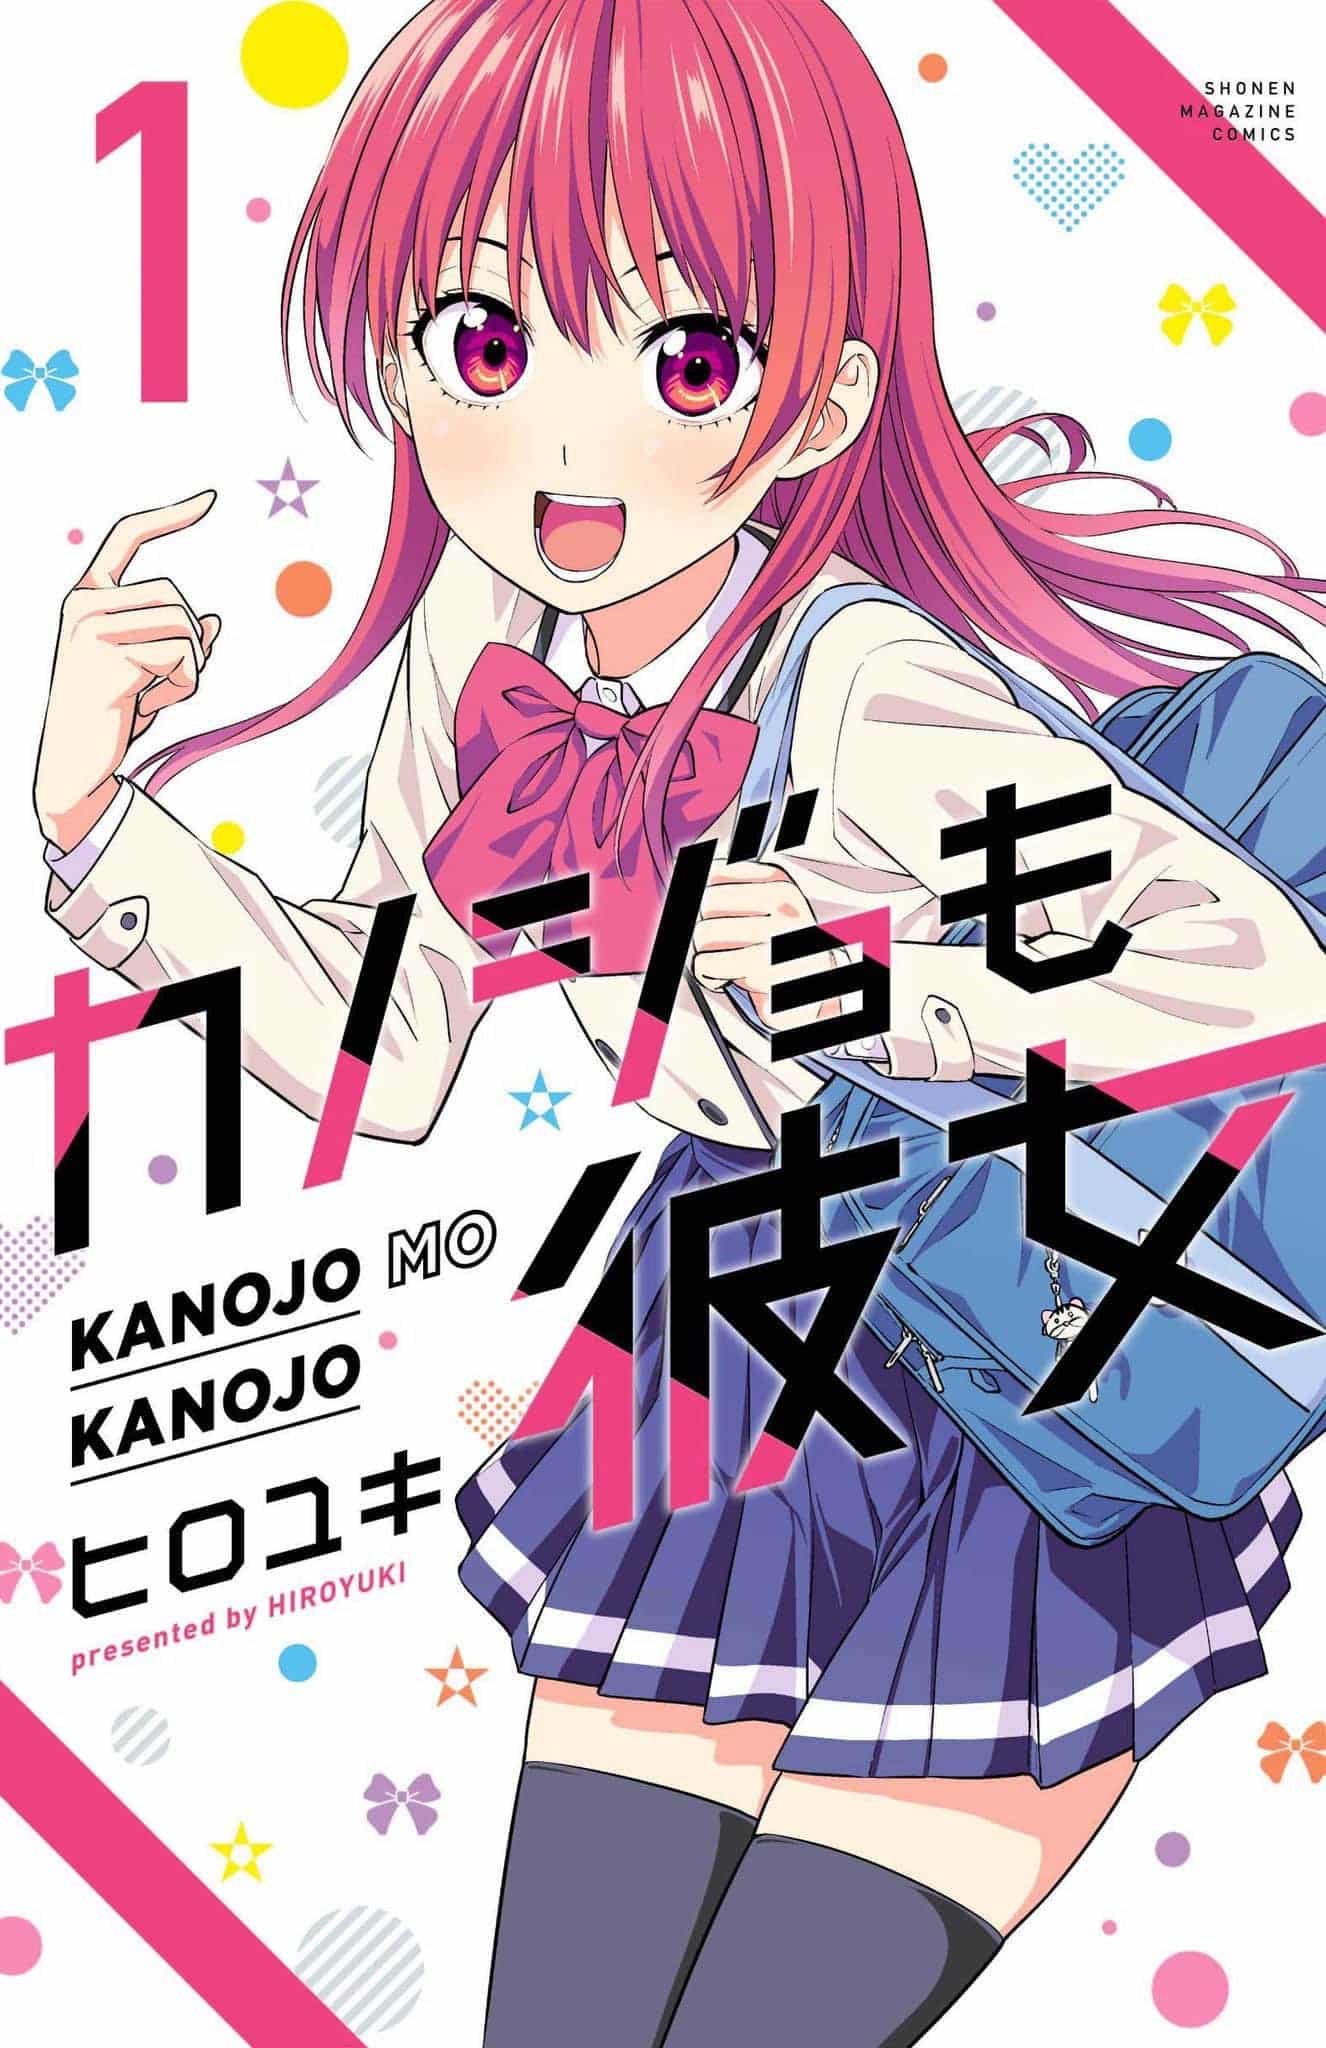 Annonce de la sortie du manga Kanojo mo Kanojo en France aux éditions Noeve Grafx